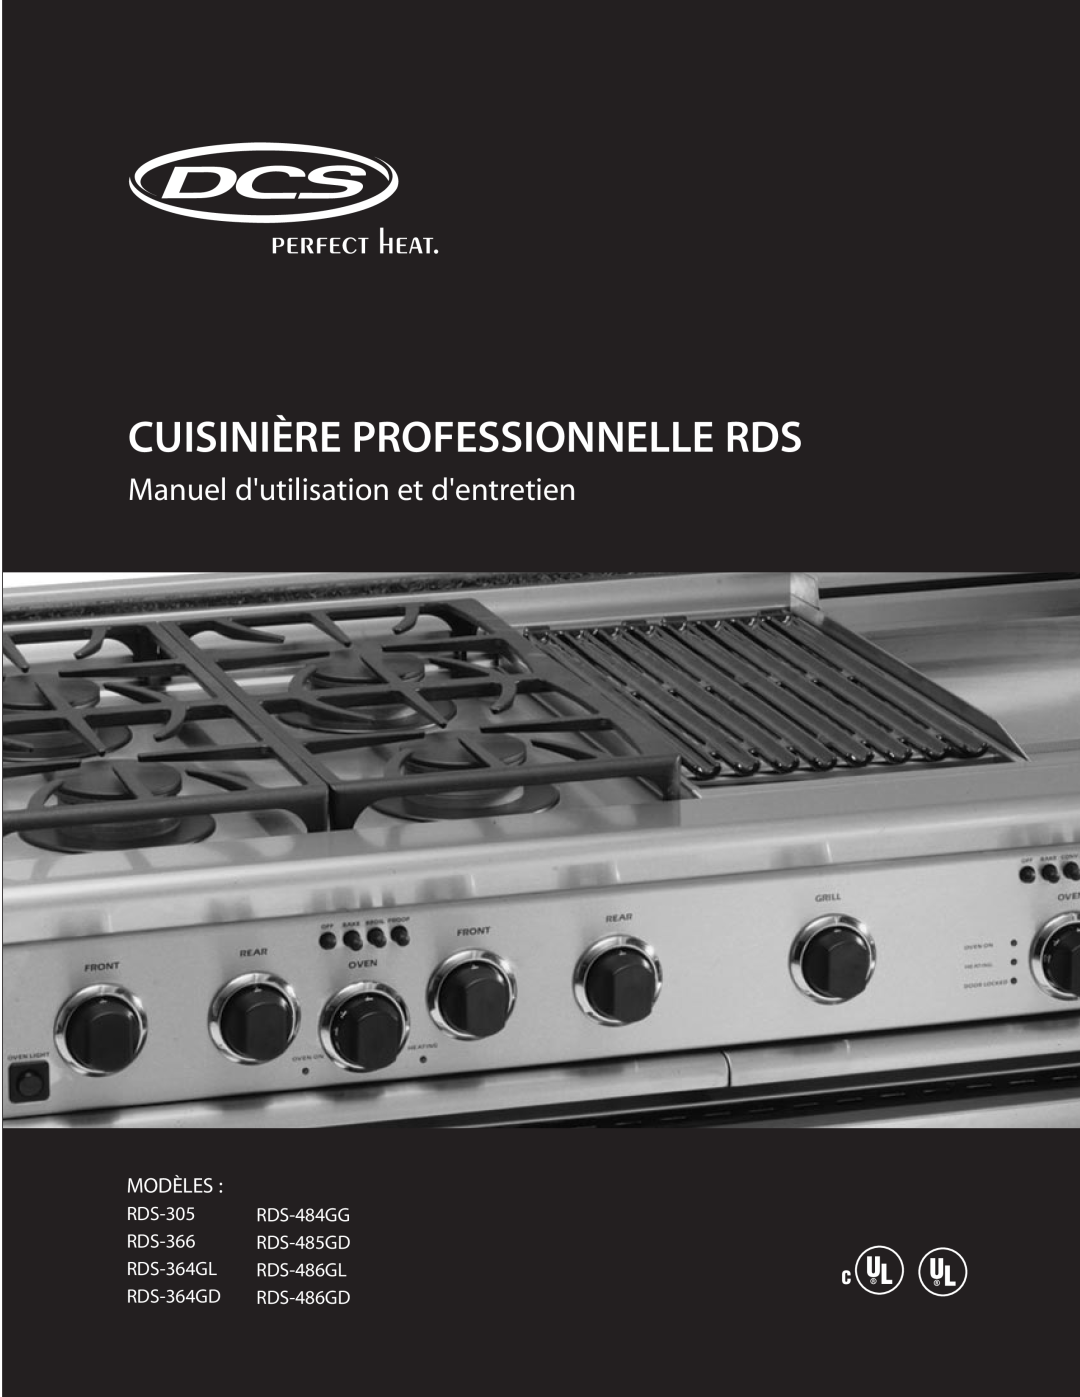 DCS RDS-305 manual Cuisinière Professionnelle Rds, Manuel dutilisation et dentretien, Modèles, RDS-364GD RDS-486GD 